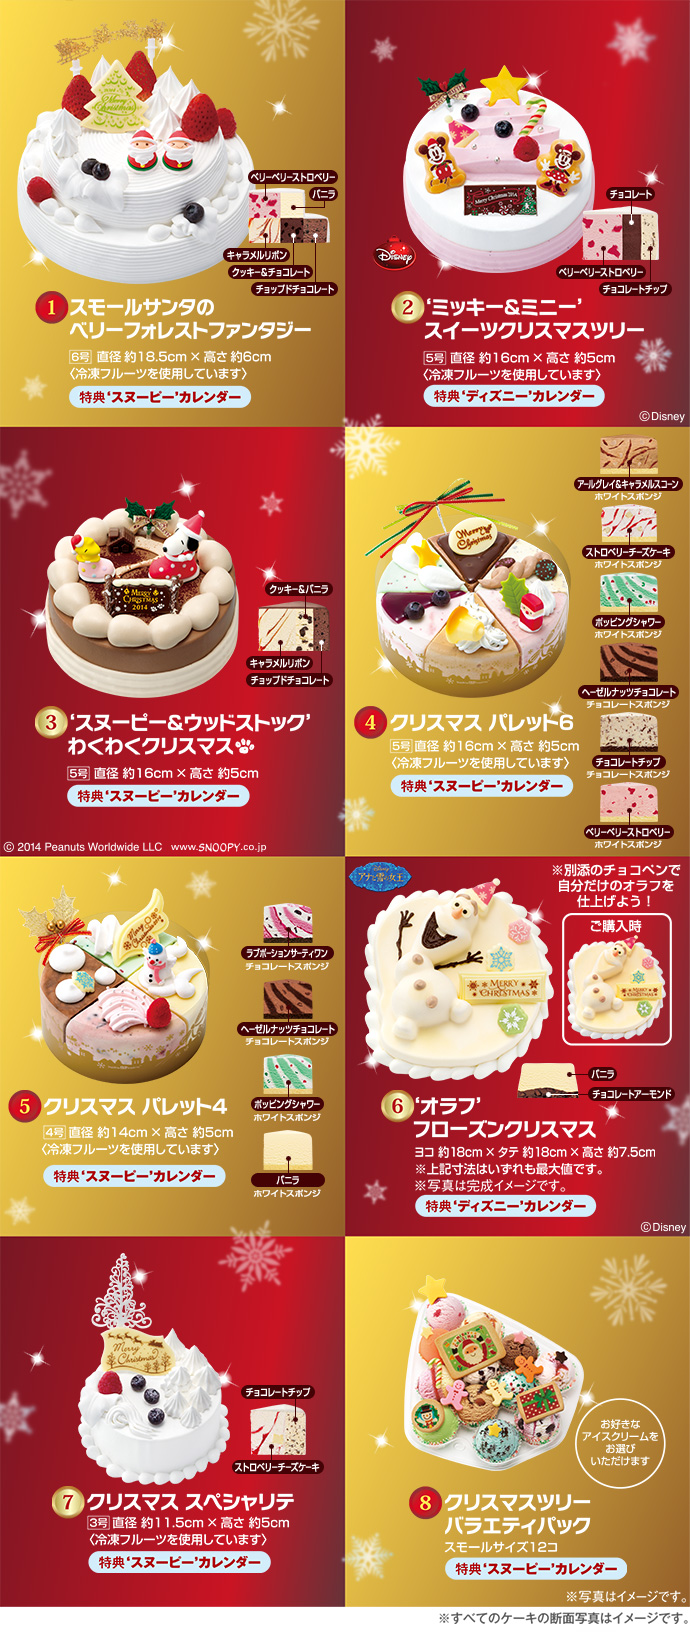 たくさん 春 威する サーティワン アイス ケーキ クリスマス 値段 Hama Chou Jp